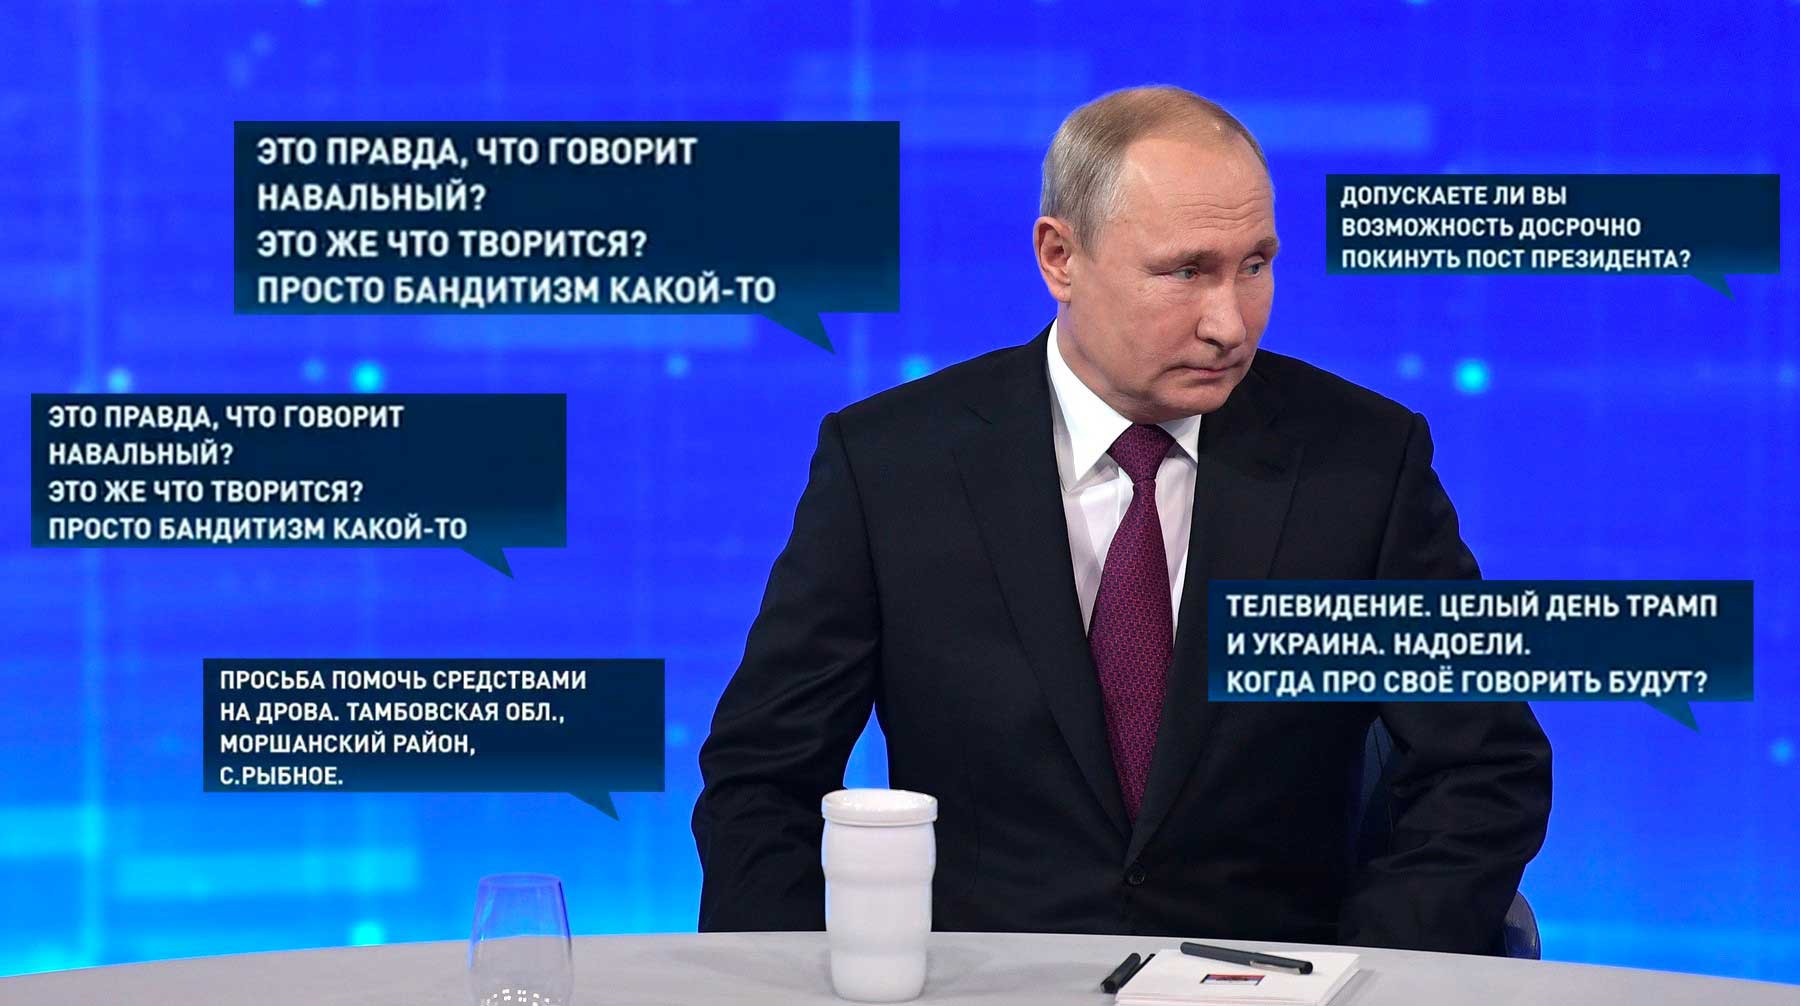 Dailystorm - «Отдувался за неработающую бюрократию». Почему Путин не захотел никого наказывать?